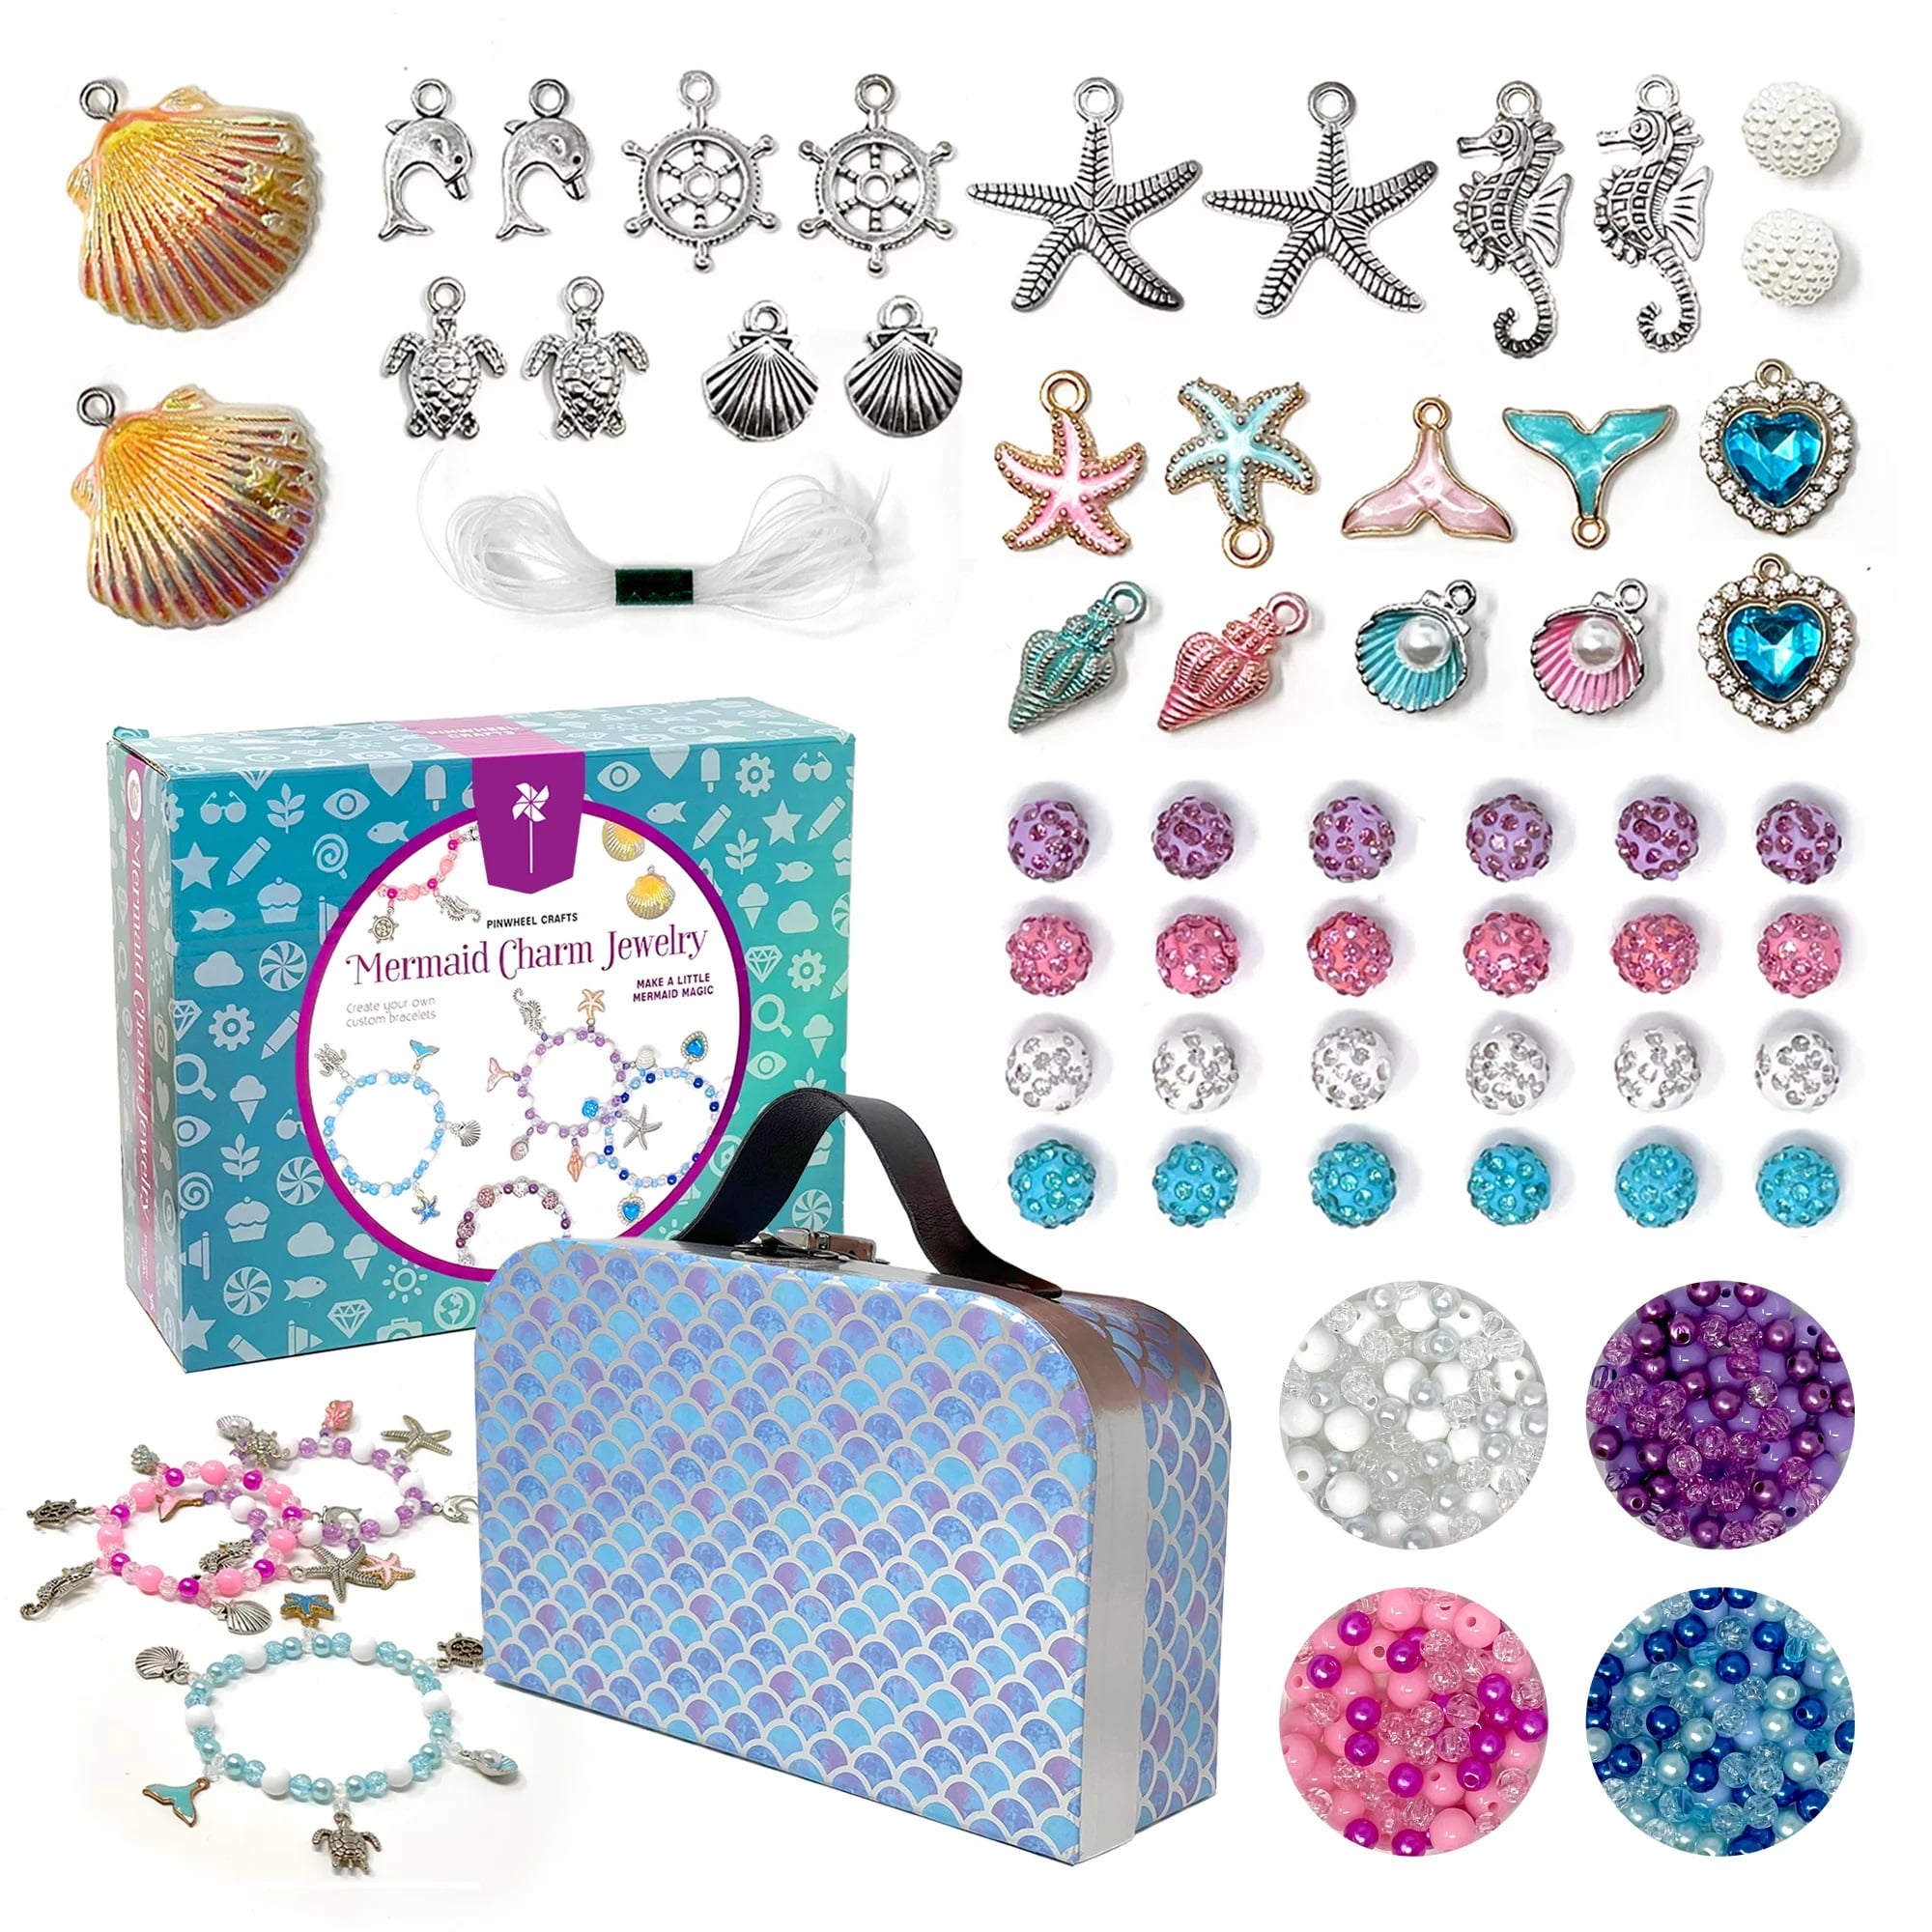 Disney Princesses Shrinky Dink Kit, Brinquedos para Crianças para